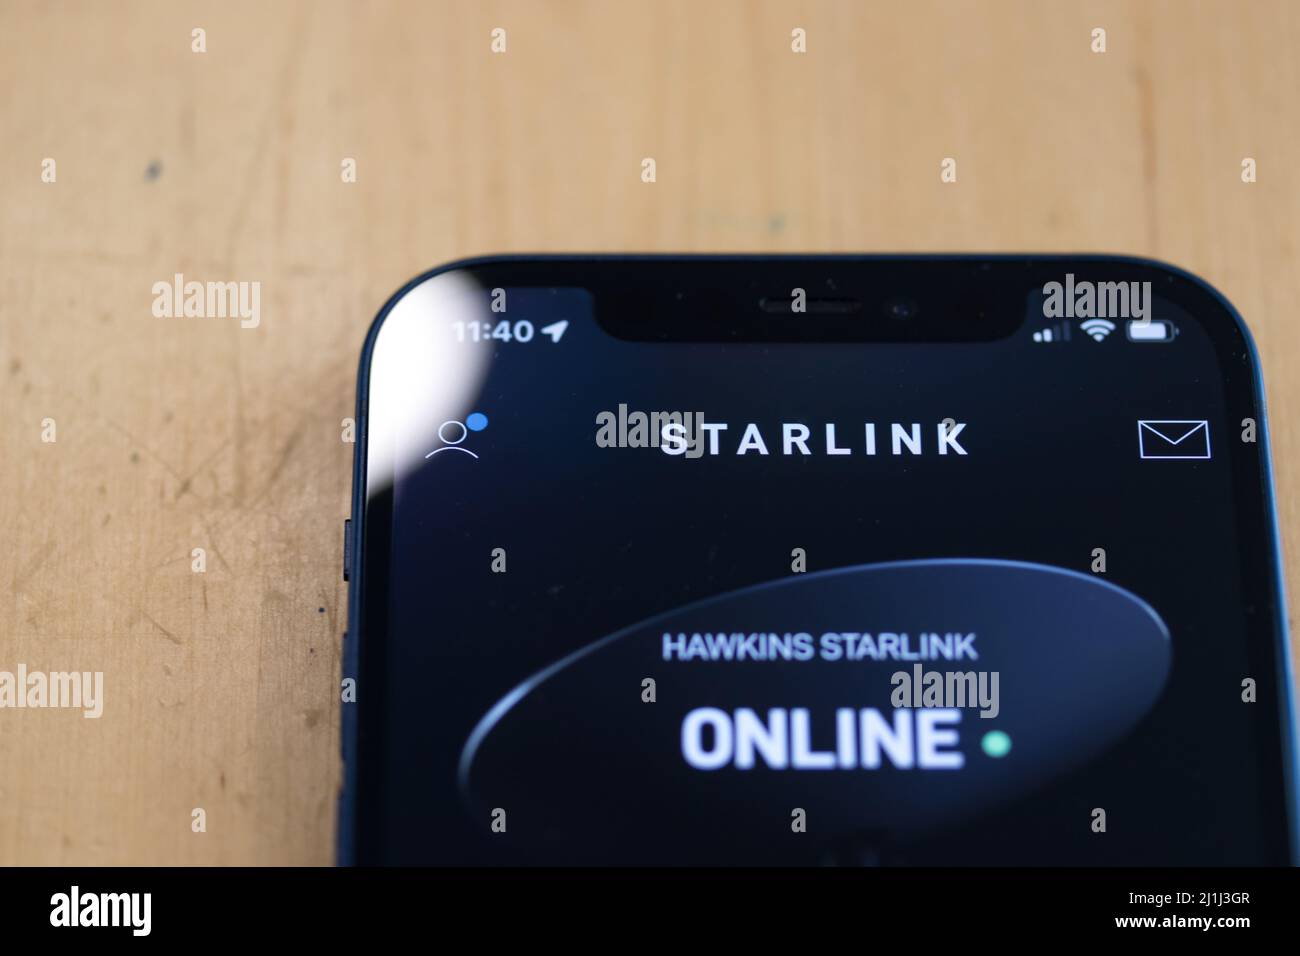 Die Spitze der SpaceX Starlink App auf einem iPhone. Die App für den neuen Satelliten-Internetdienst signalisiert grün und online. Stockfoto